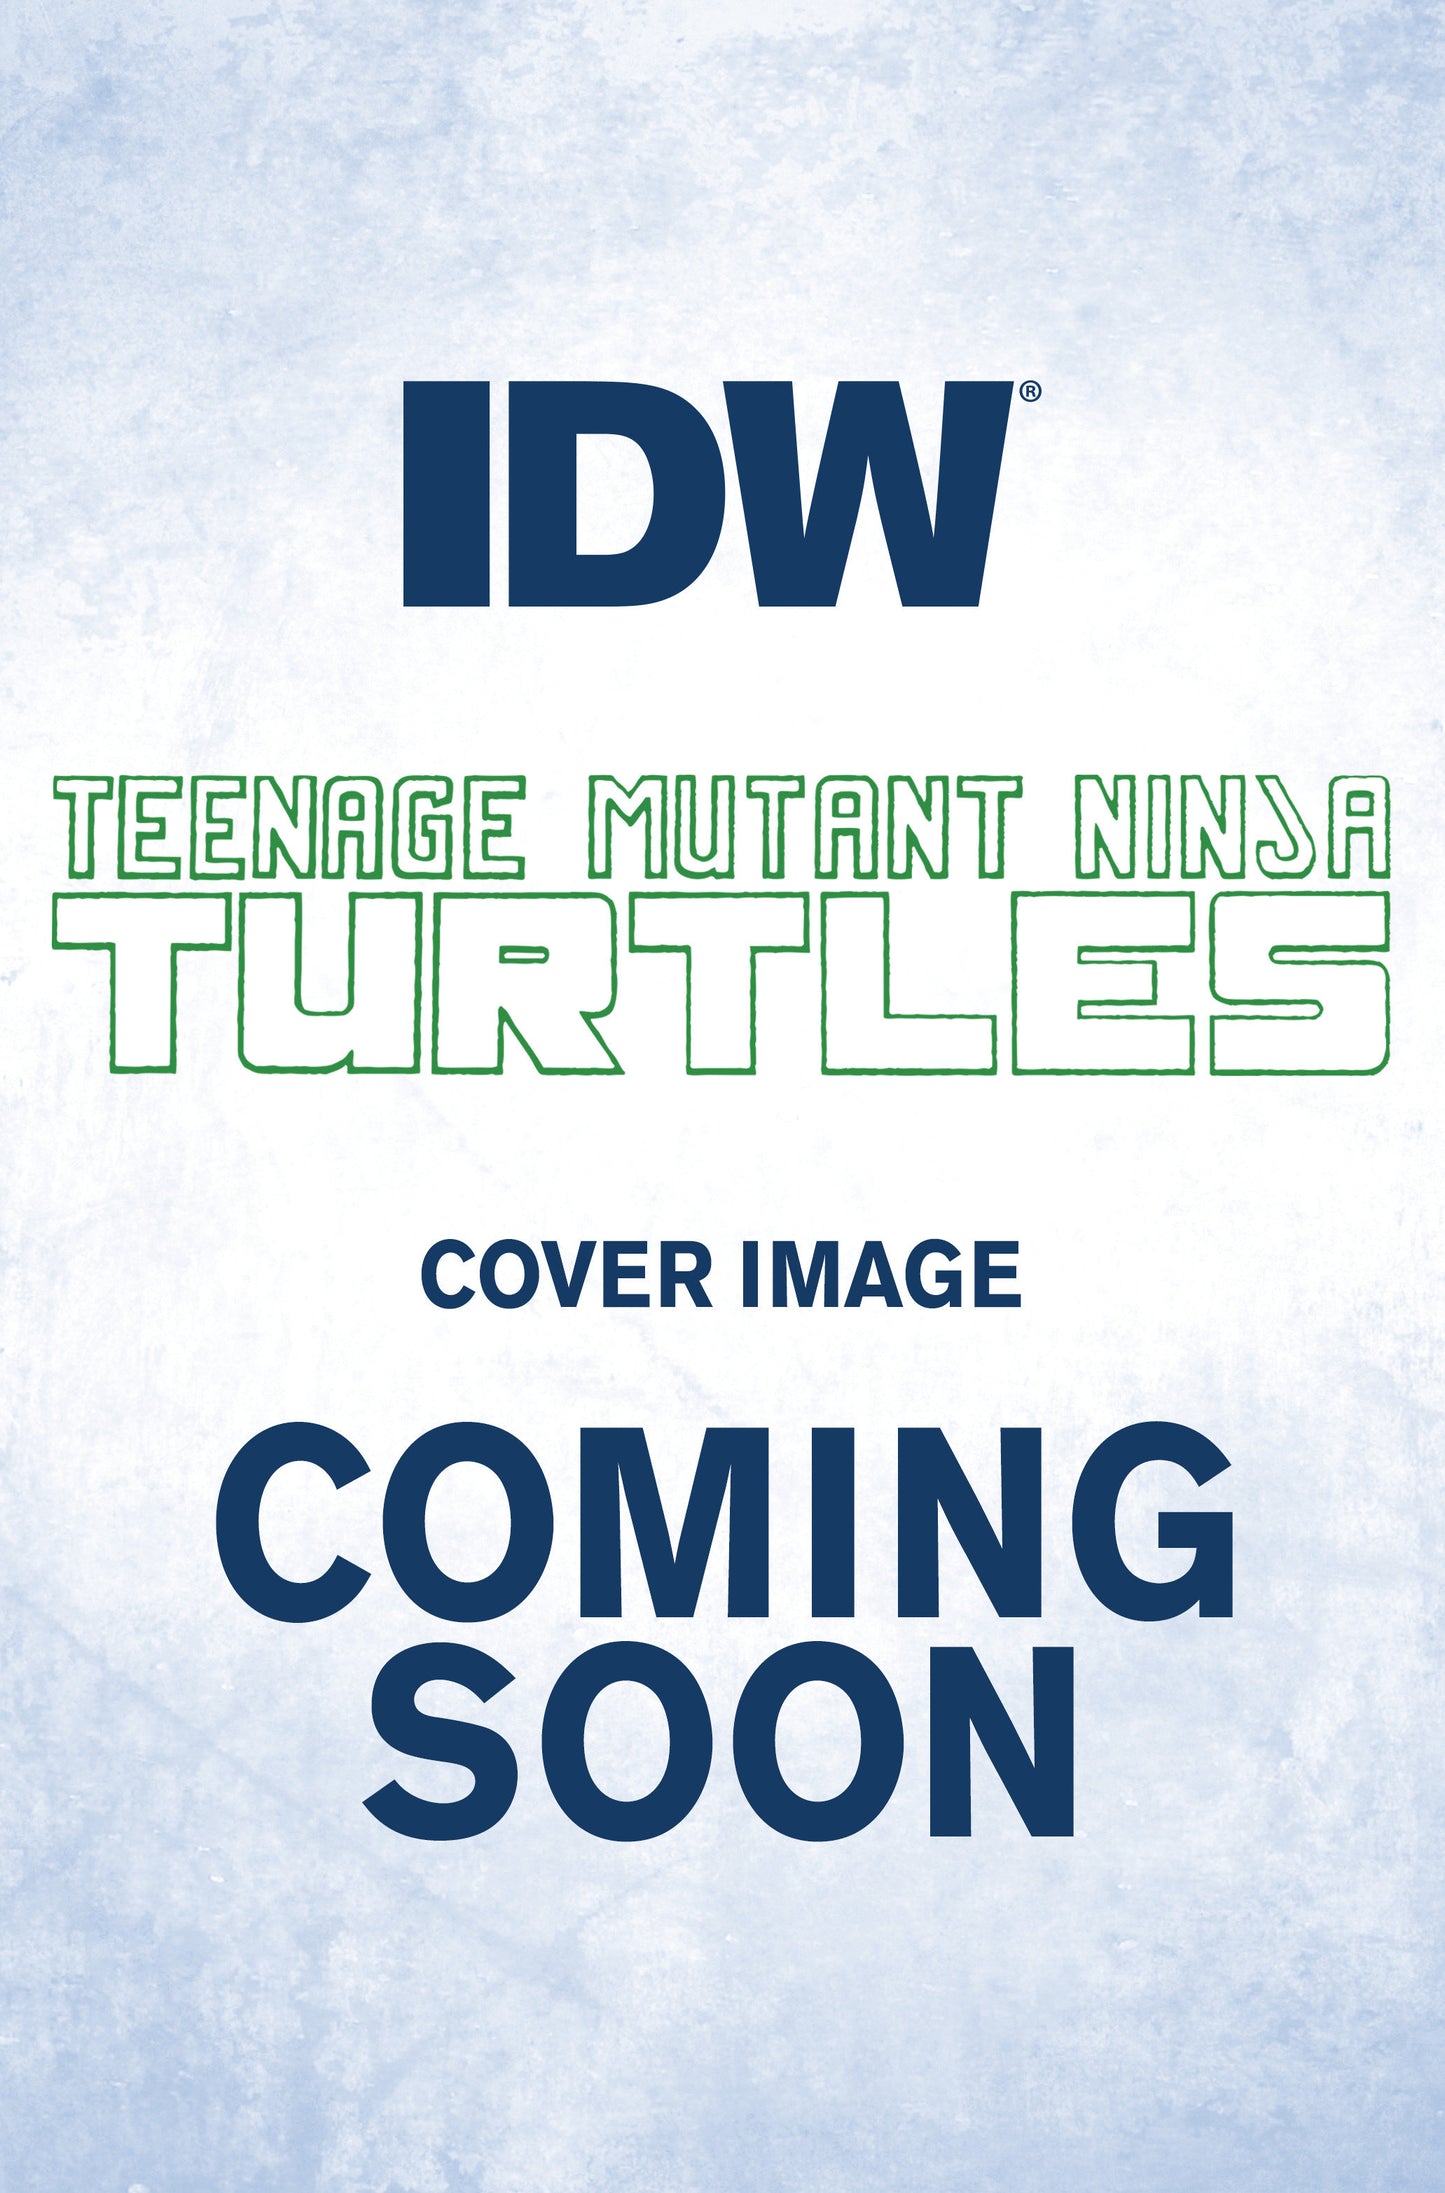 Teenage Mutant Ninja Turtles: The Armageddon Game #6 Variant C (Eastman)